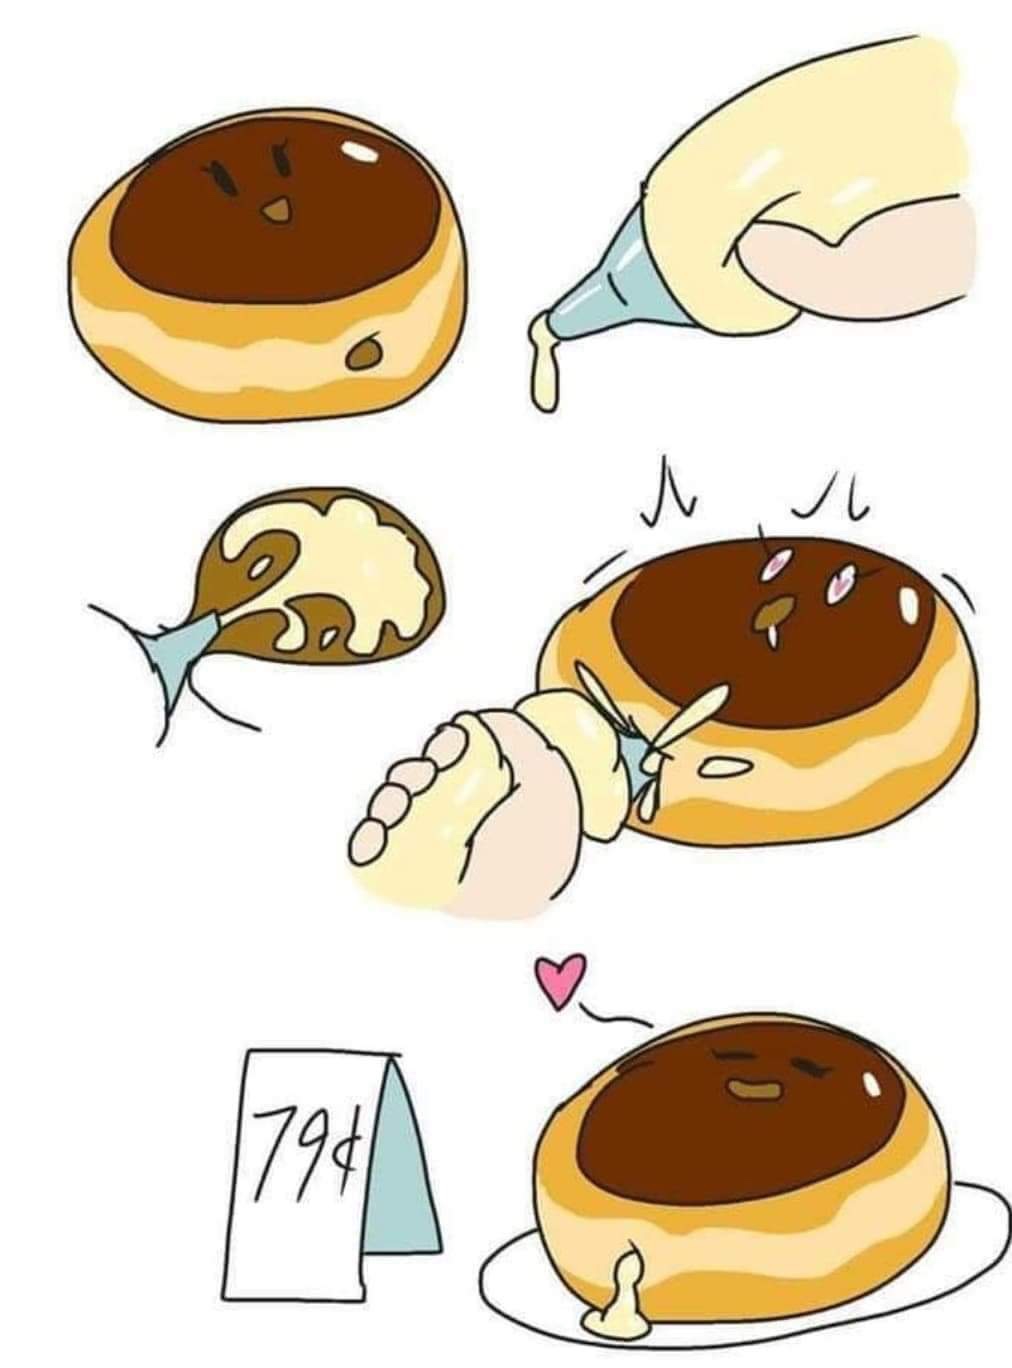 cream filled donut meme